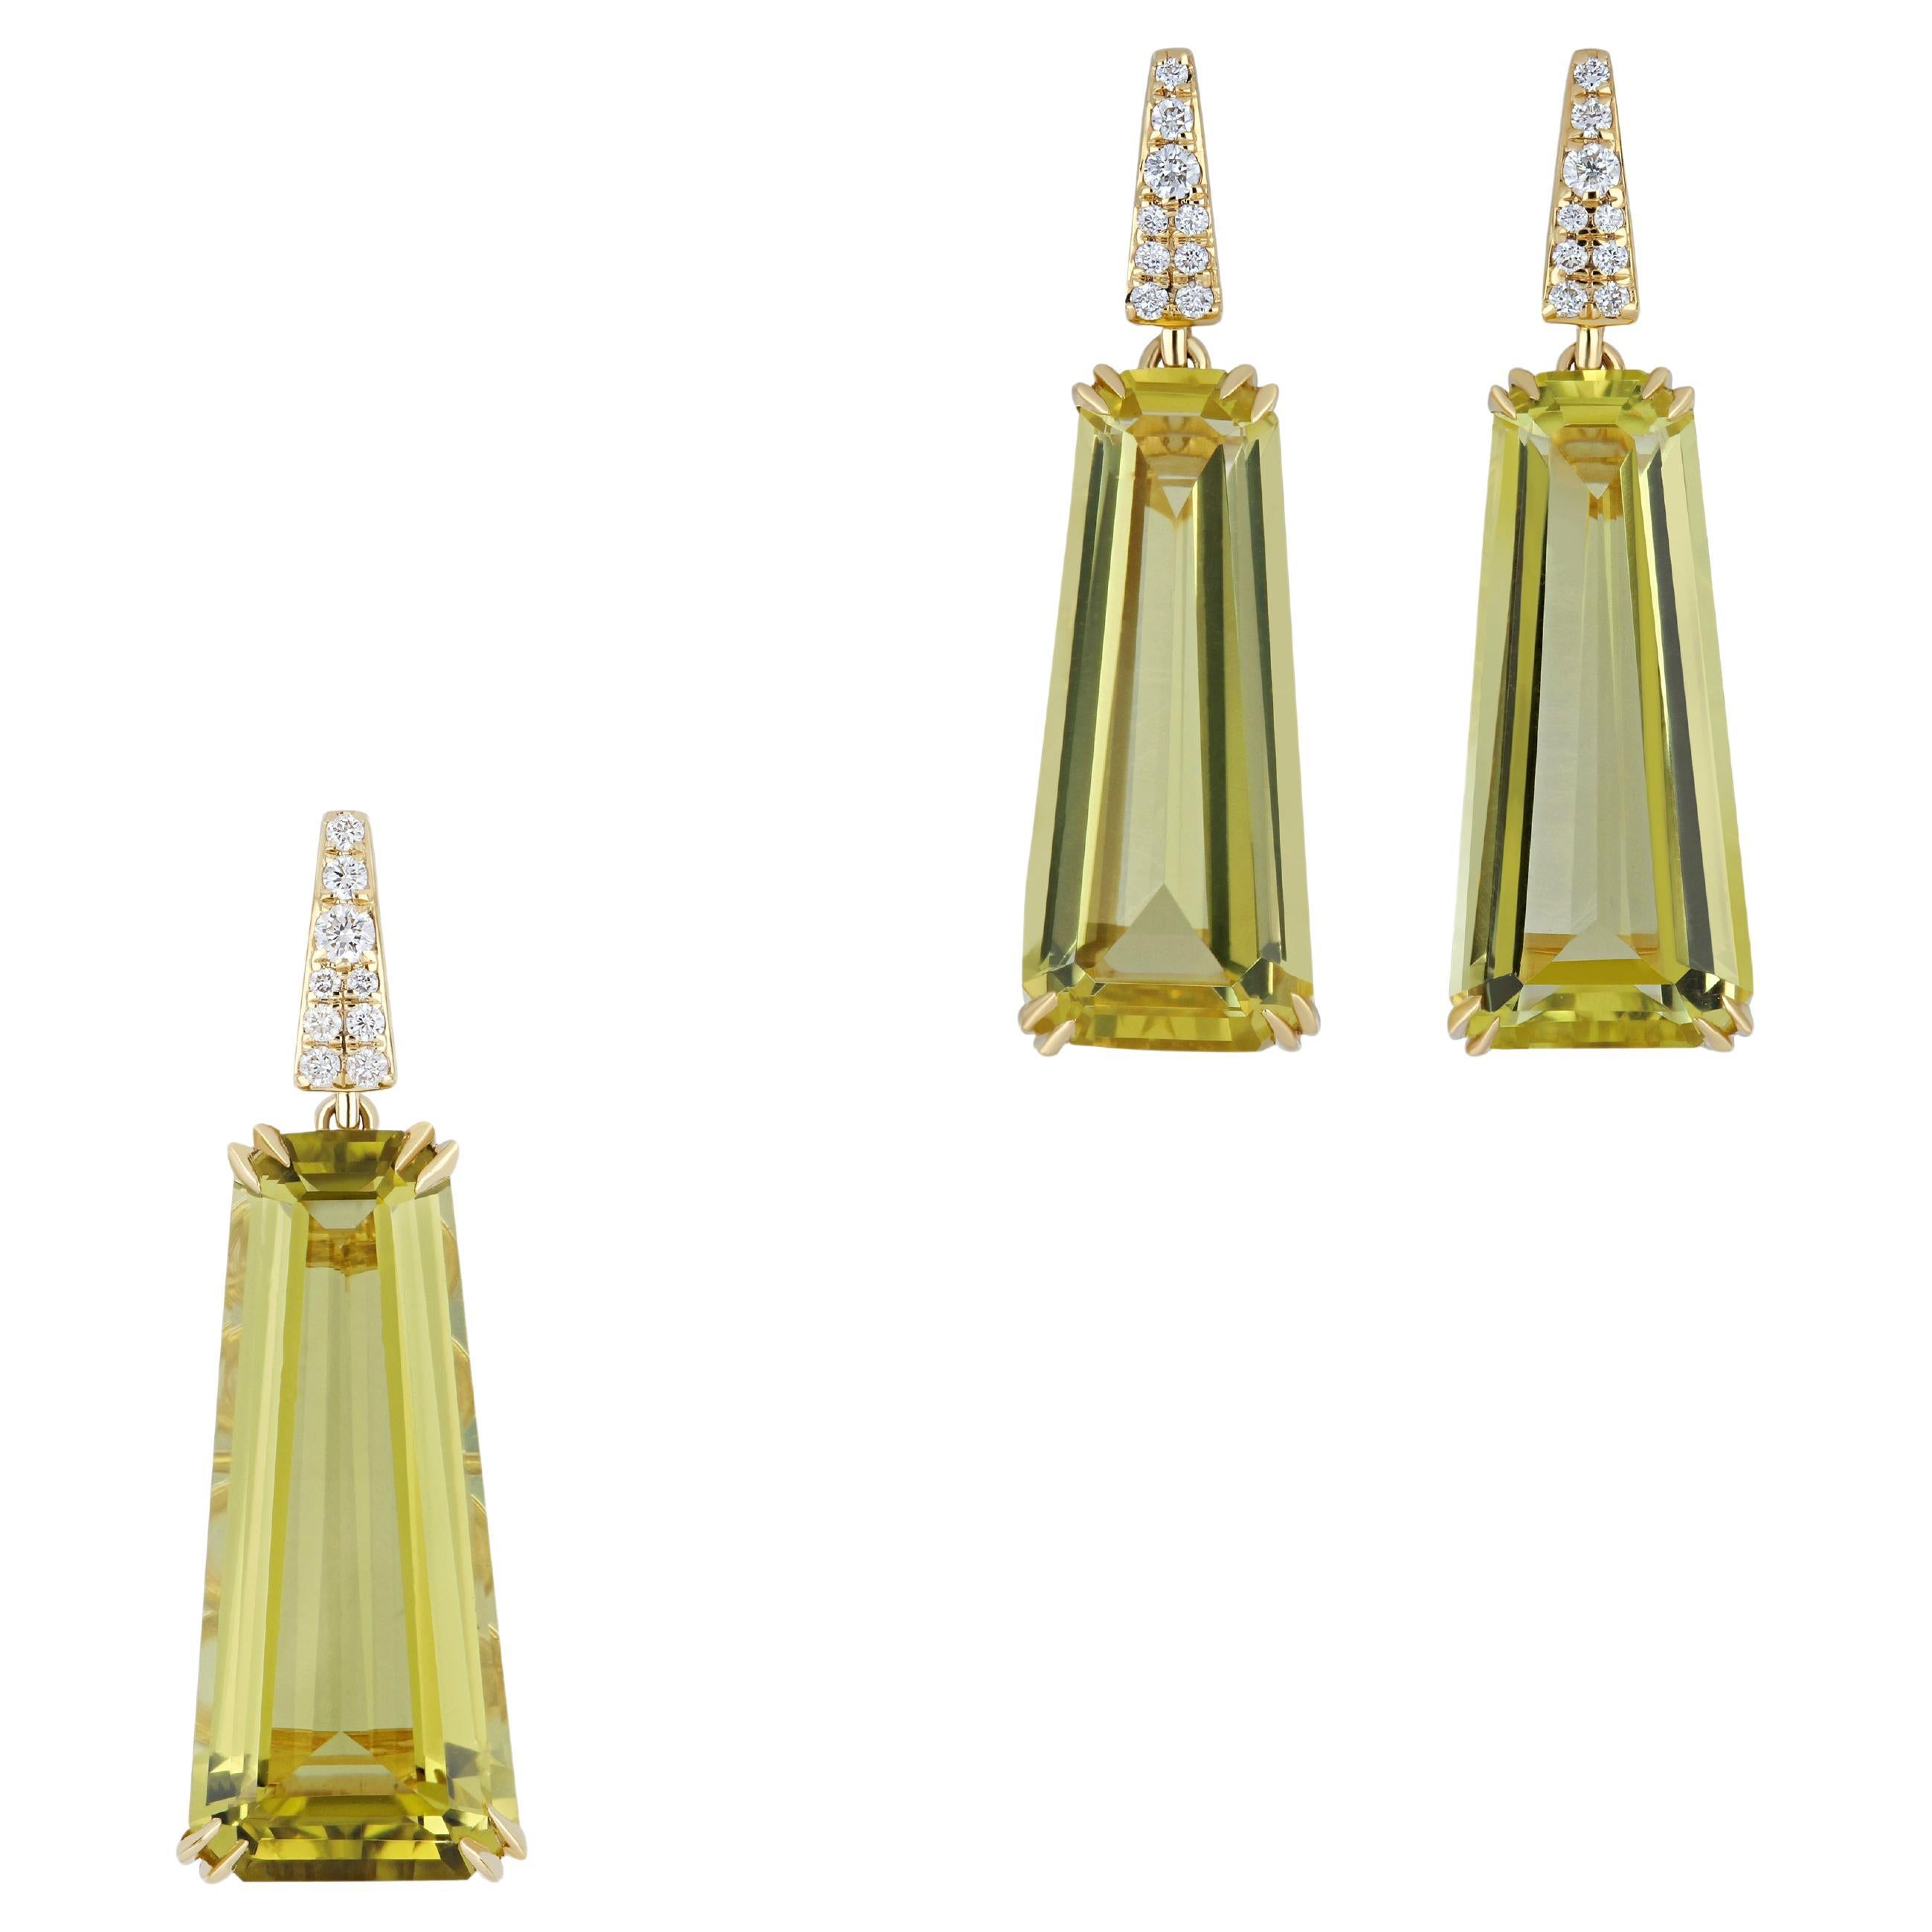 Exquisite Zitronenquarz & Diamant Nieten Pedant & Ohrringe Set in 18 K Gold